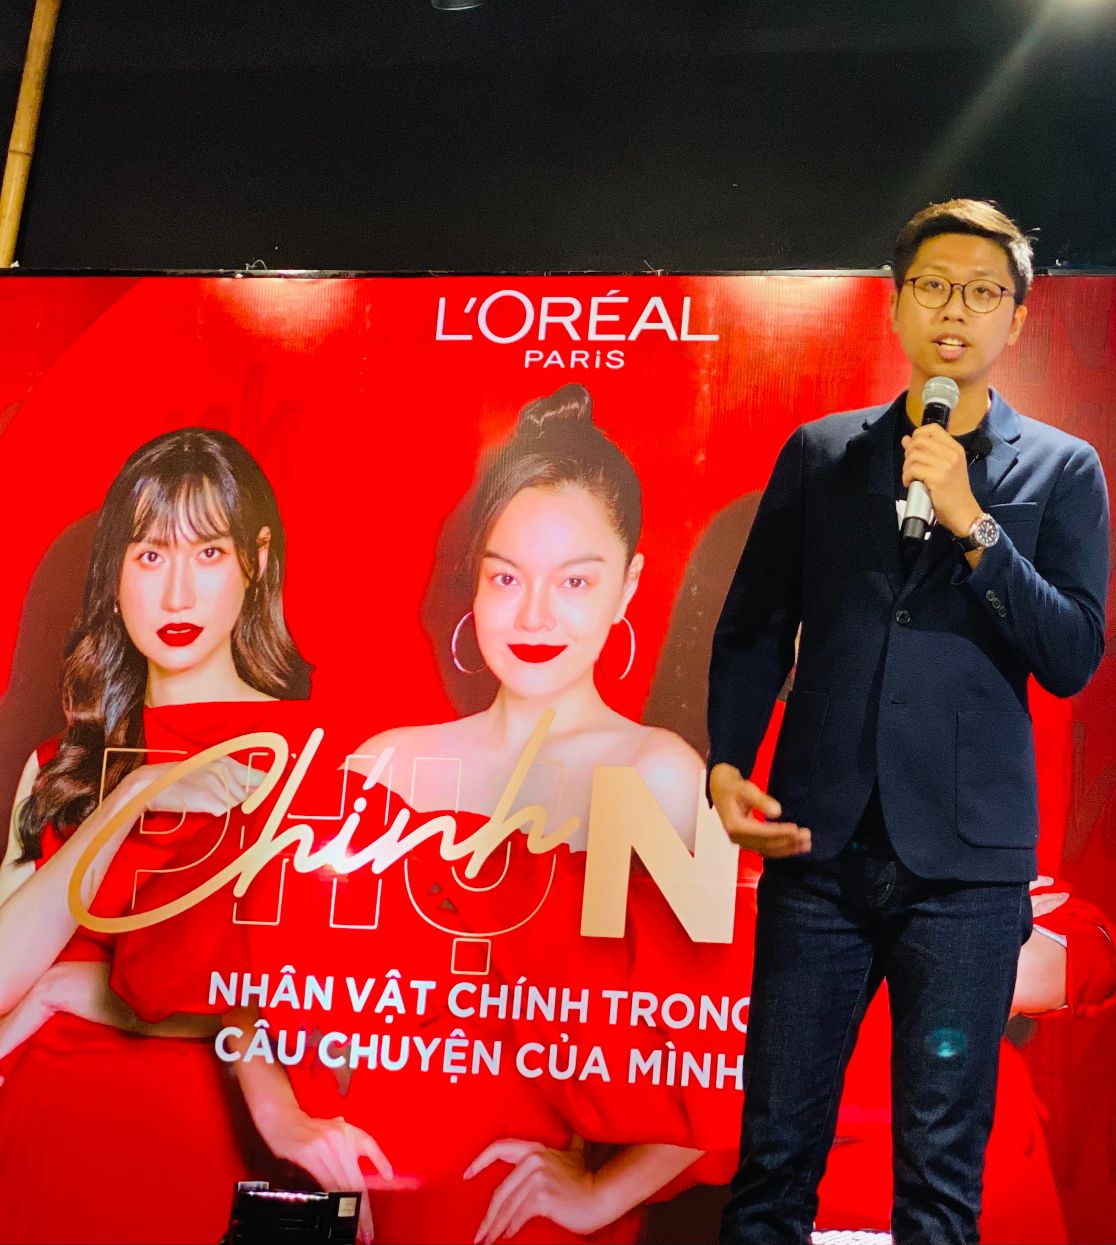 Đại diện nhãn hàng Gojek chia sẻ hoạt động hợp tác L’Oréal Paris hợp tác với Gojek hỗ trợ cho các nữ đối tác tài xế